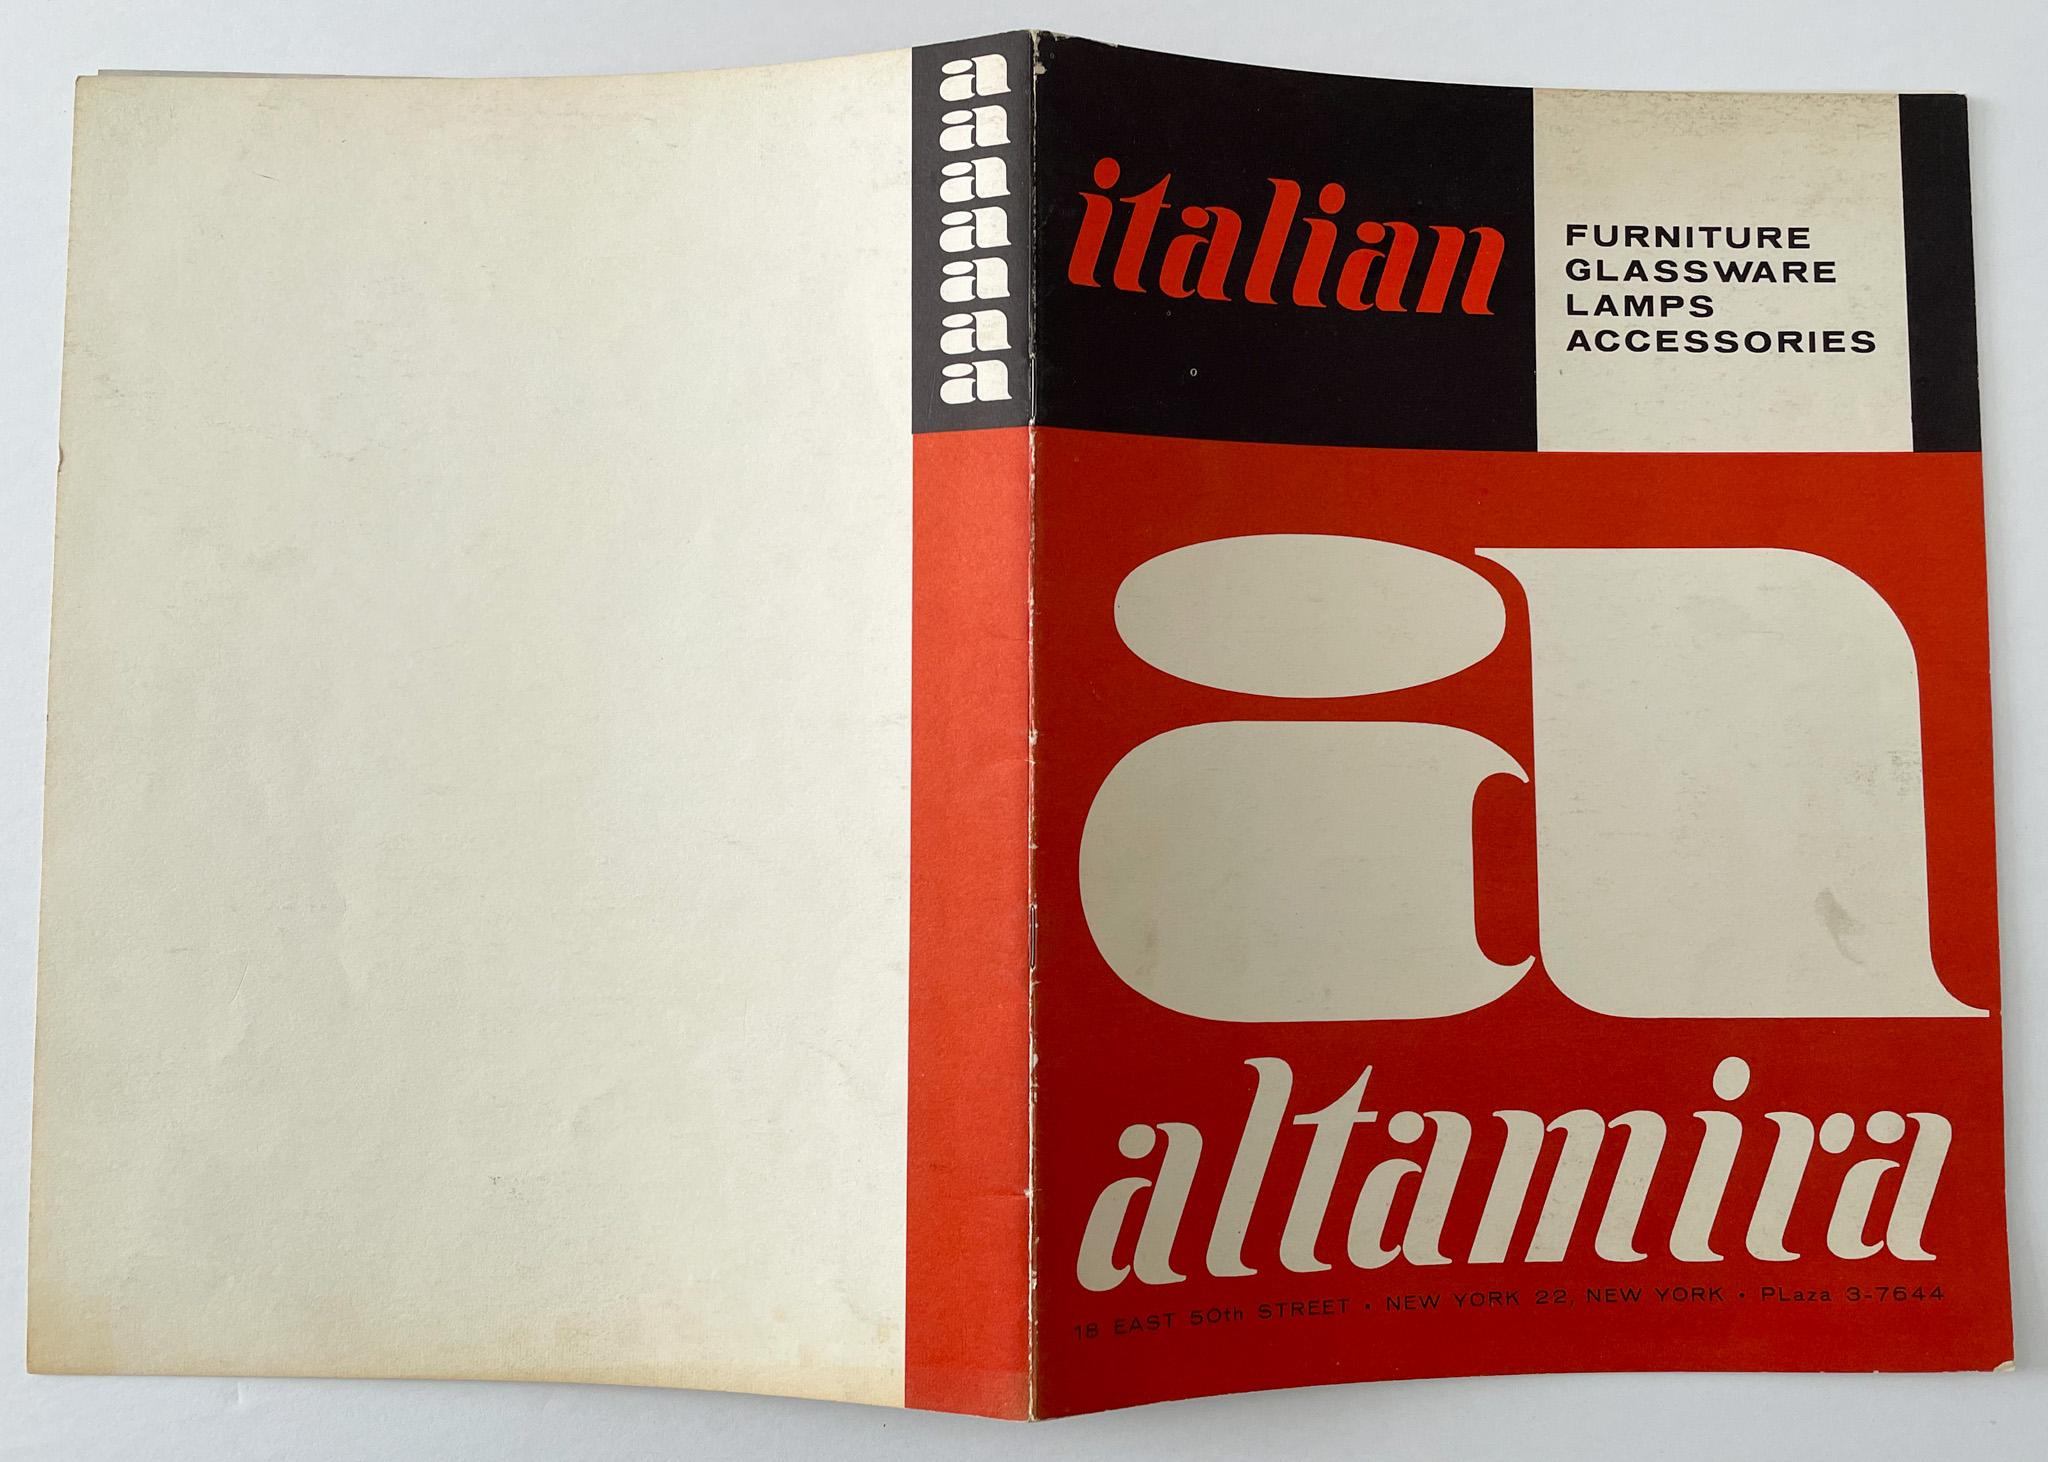 Catalogue présentant des meubles et accessoires italiens haut de gamme, publié vers 1956 par le célèbre centre de design Altamira situé au 18 East 50th St à New York. Selon l'introduction, 